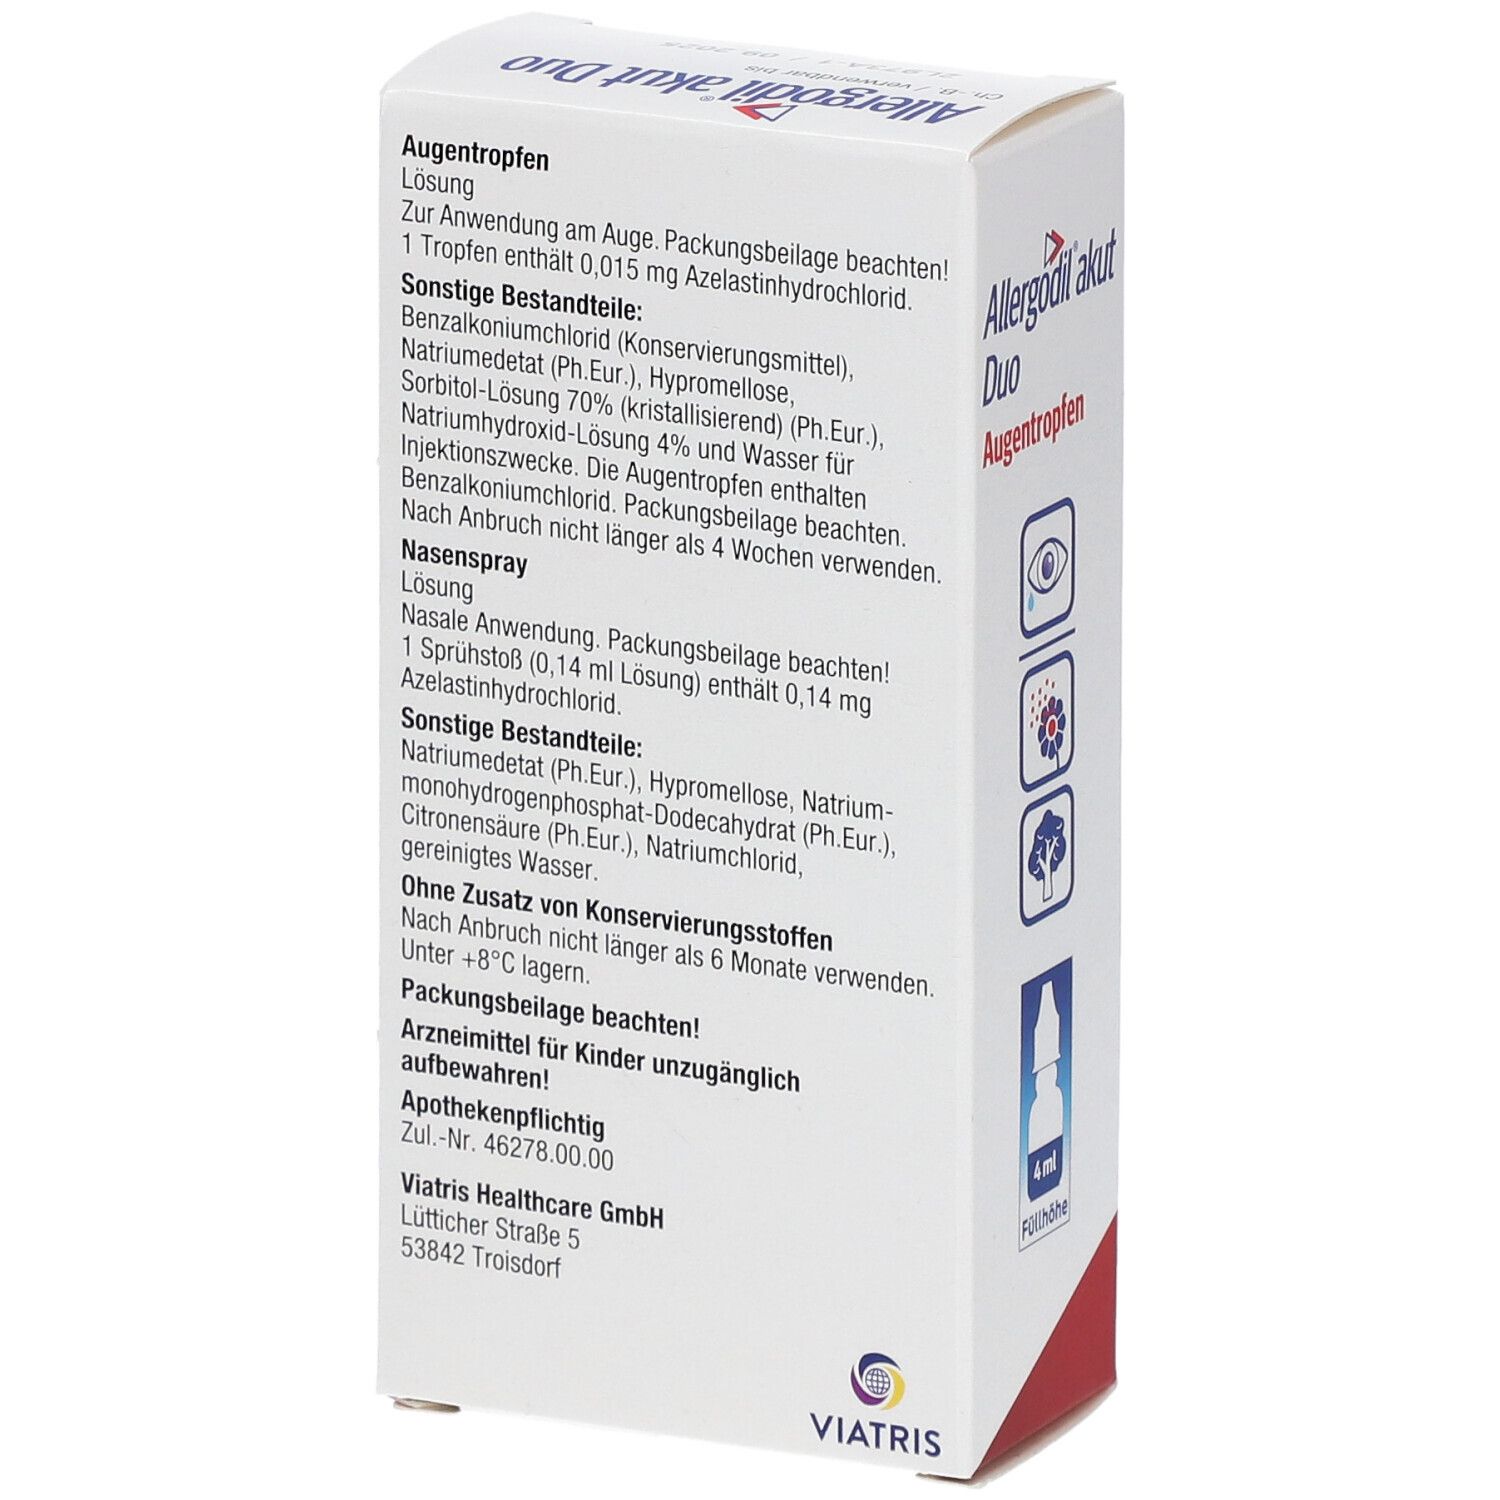 Allergodil® akut Duo: Allergie Kombipack mit Nasenspray (10 ml) und Augentropfen (4 ml), Antiallergikum mit Azelastinhydrochlorid